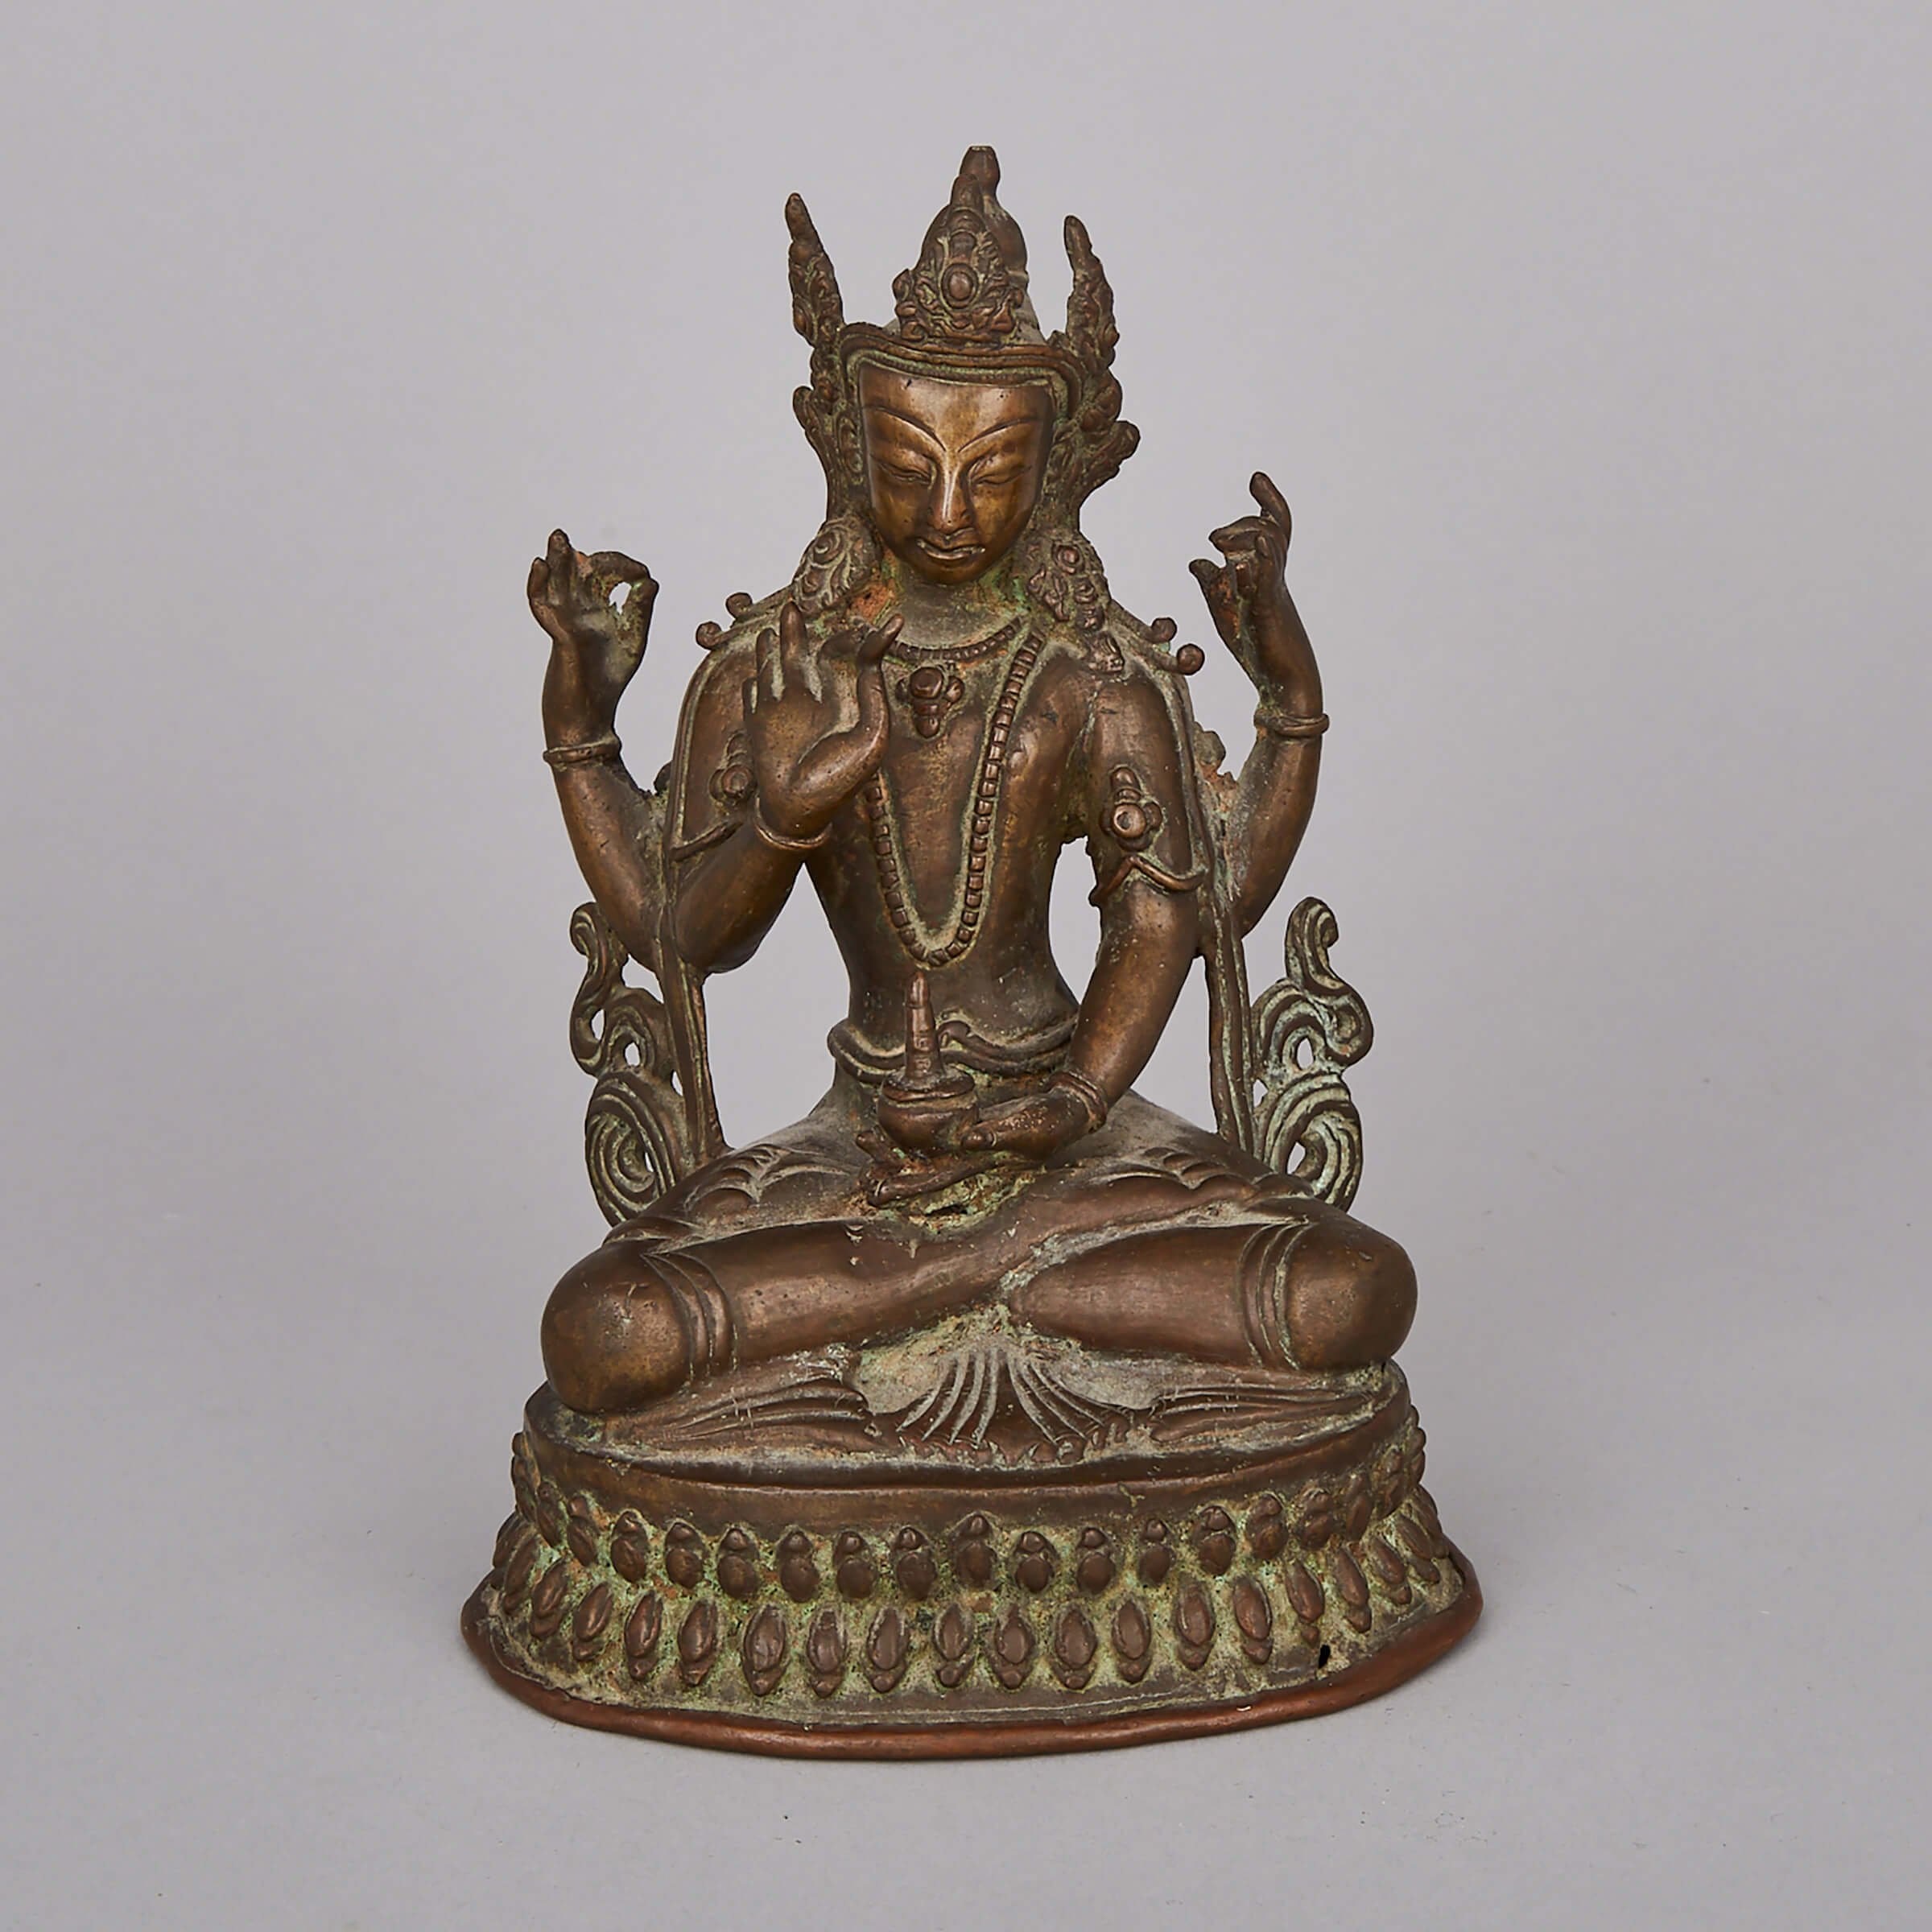 A Bronze Seated Figure of Vasudhara, Western Tibet, 18th Century or Earlier